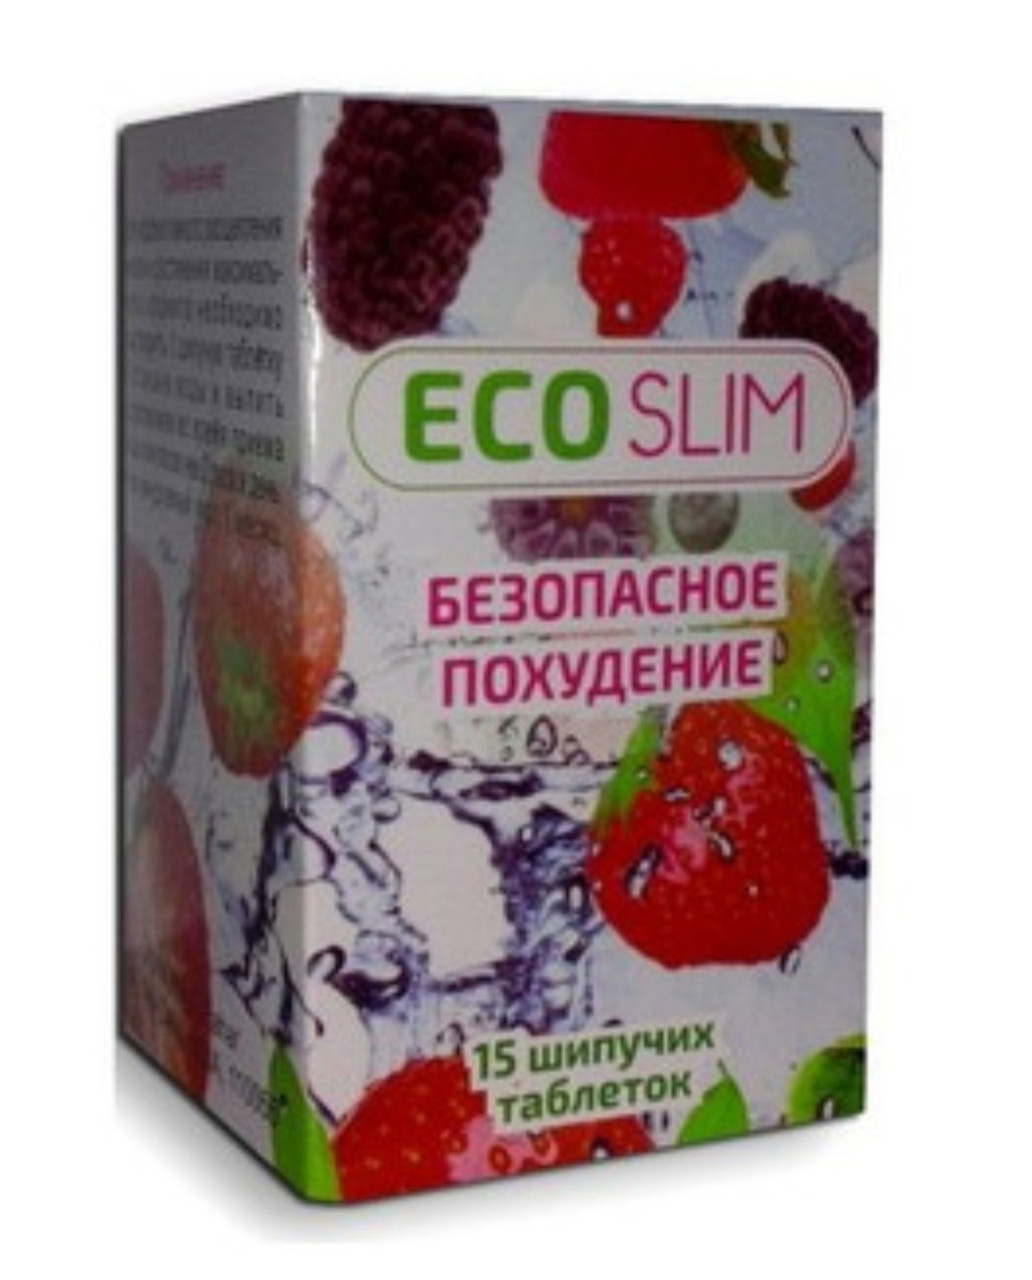 Eco Slim pareri Moldova: topește până la 10 kg de grăsime